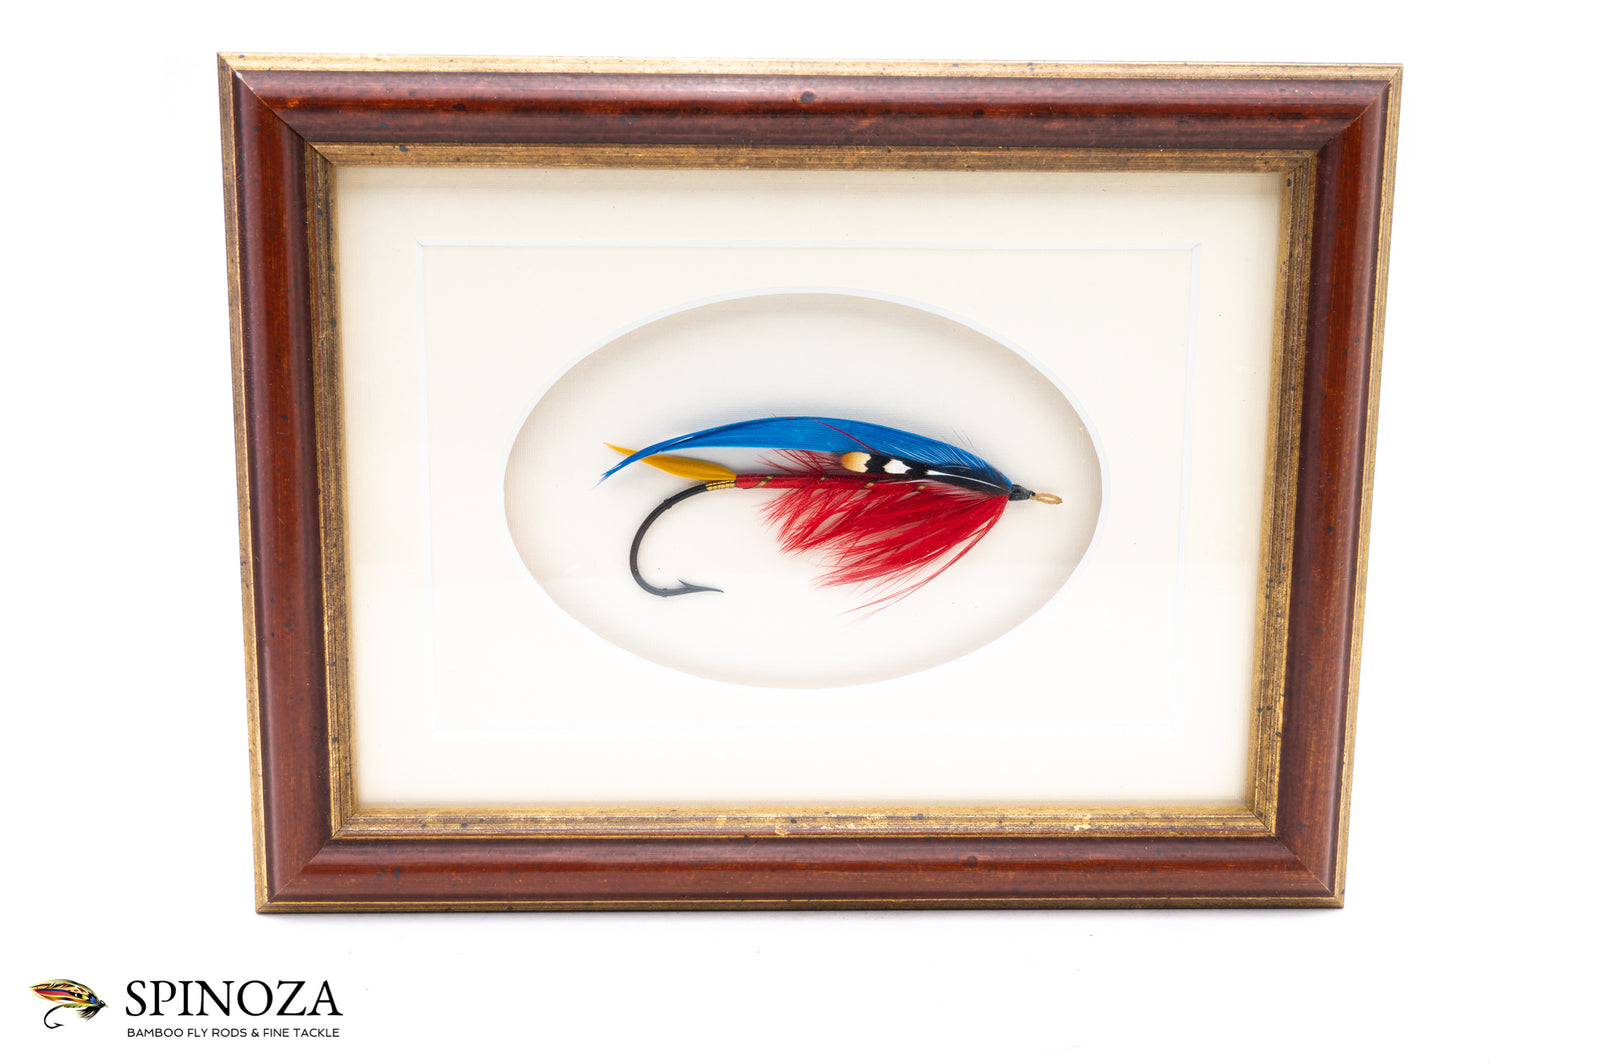 Framed Flies - Spinoza Rod Company